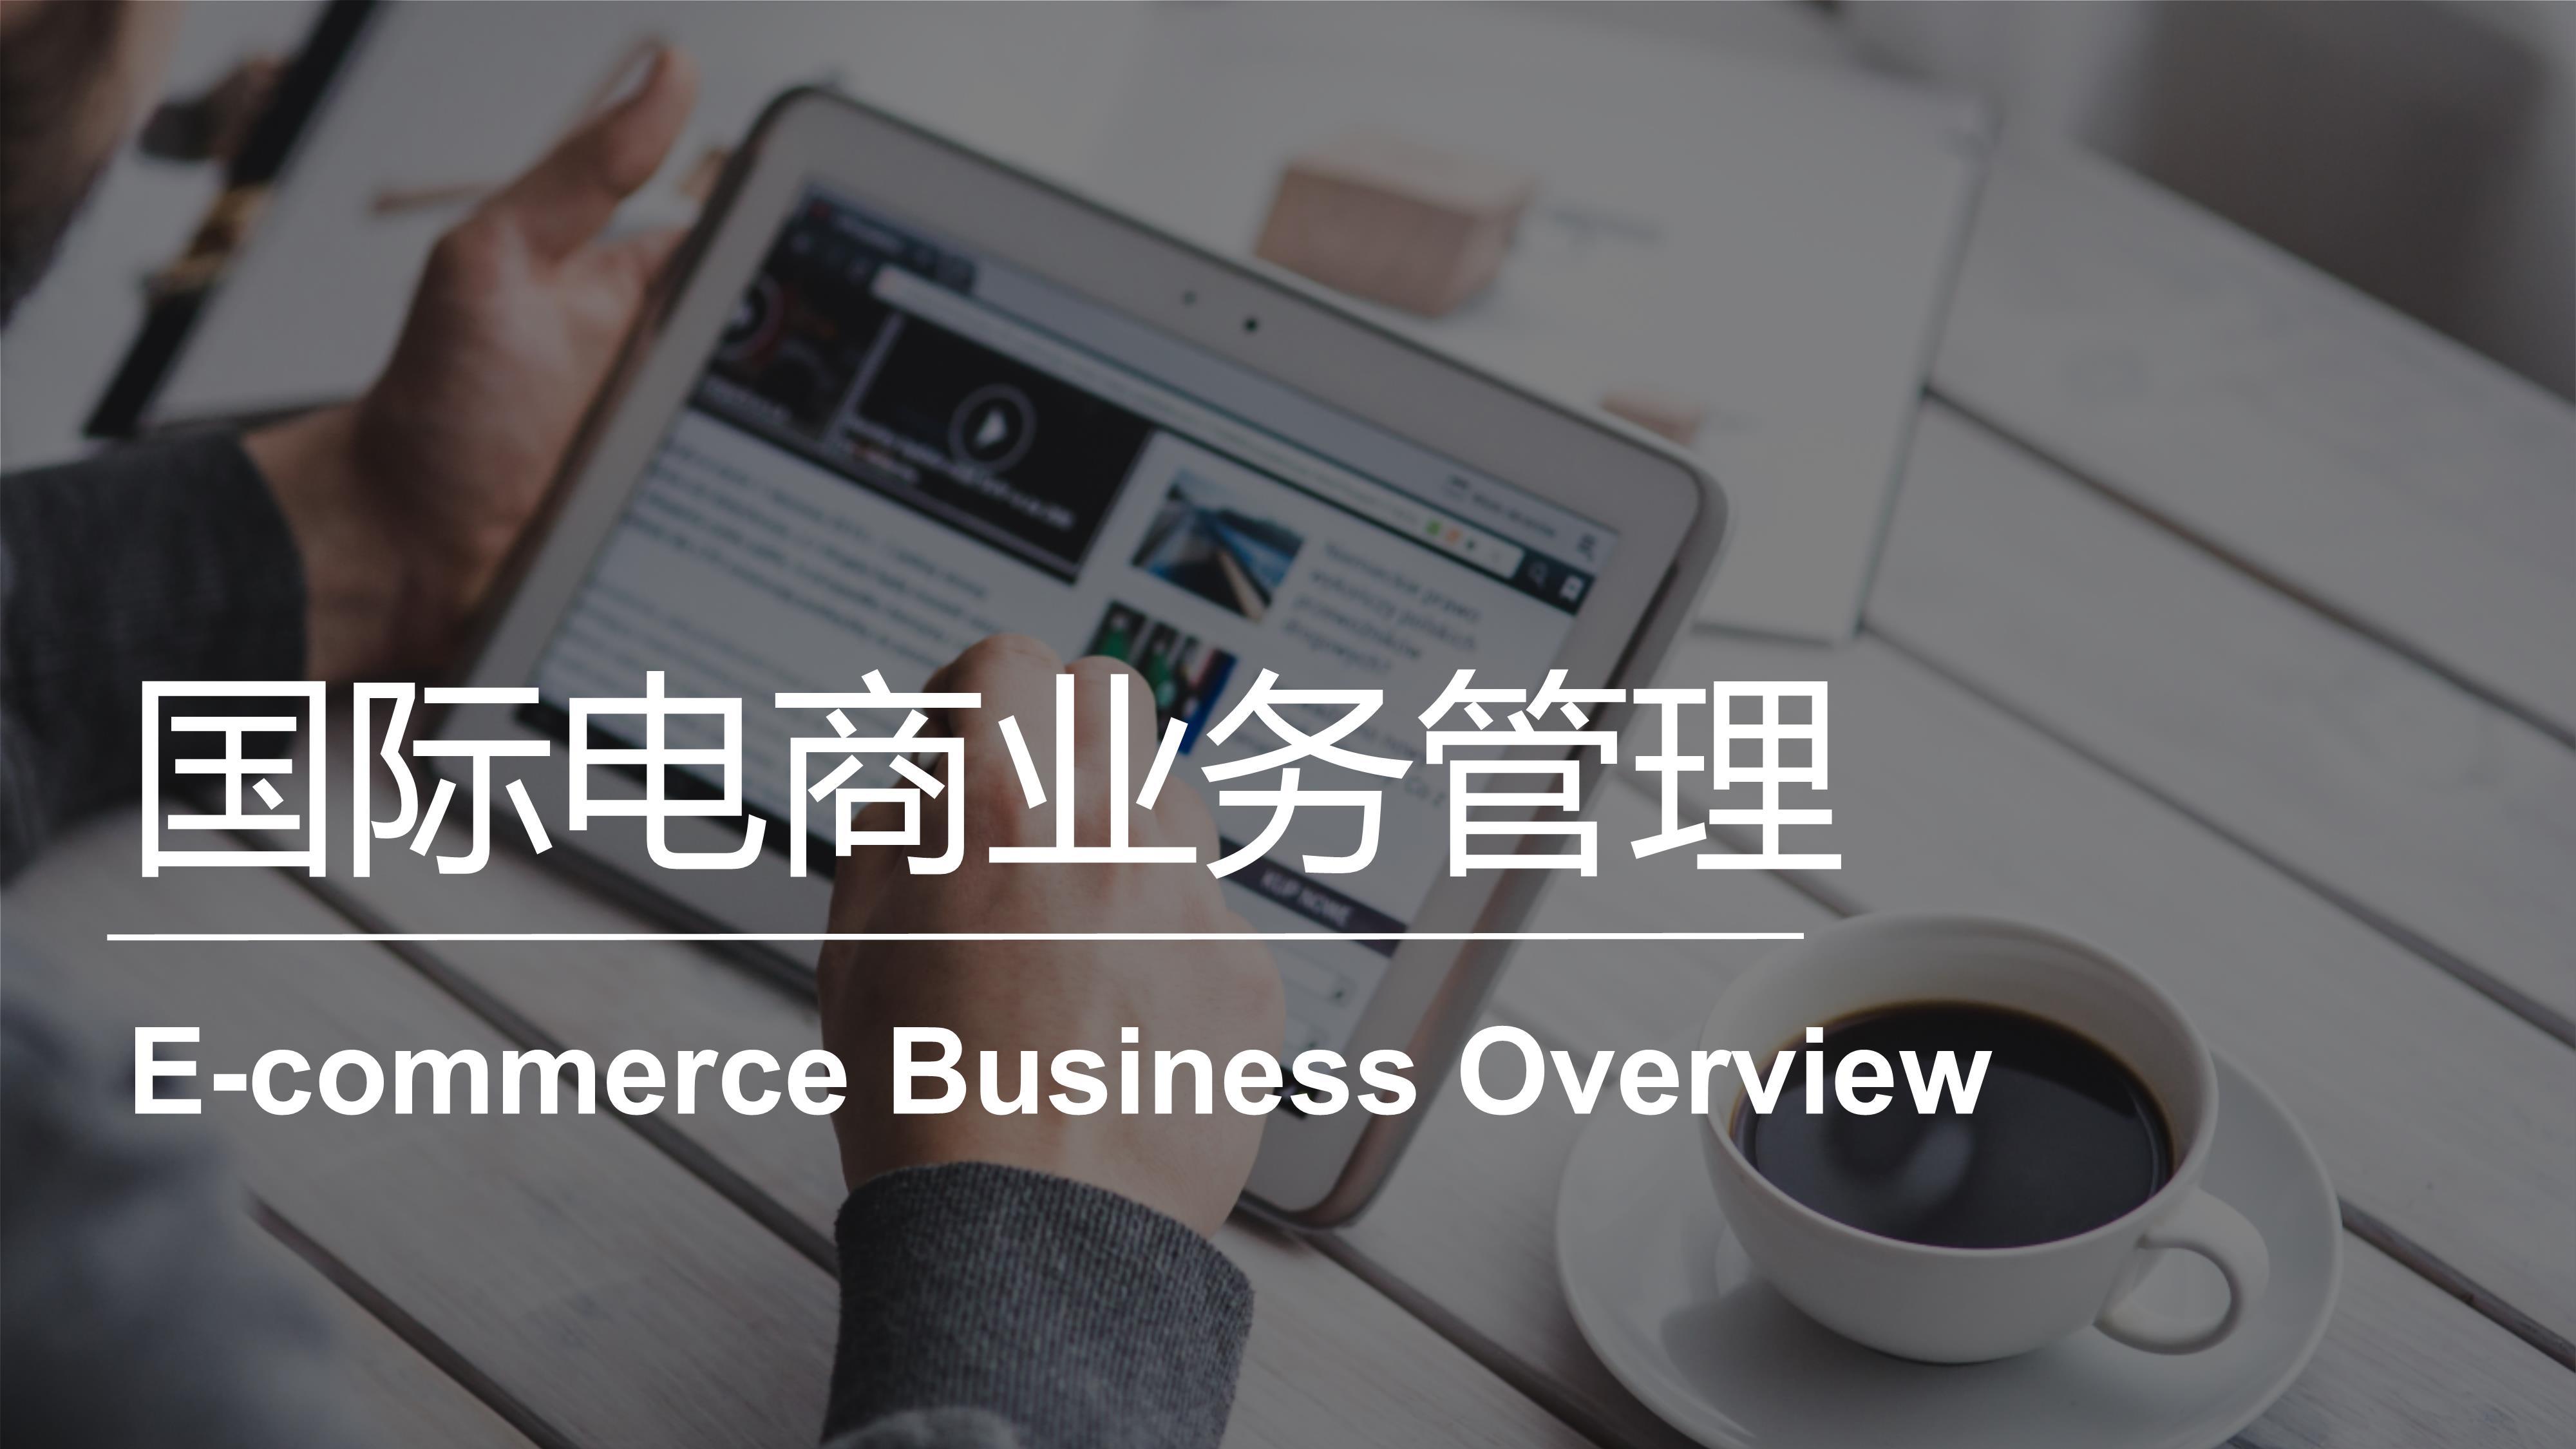 国际电商业务管理 | E-commerce Business Overview 20221101192406